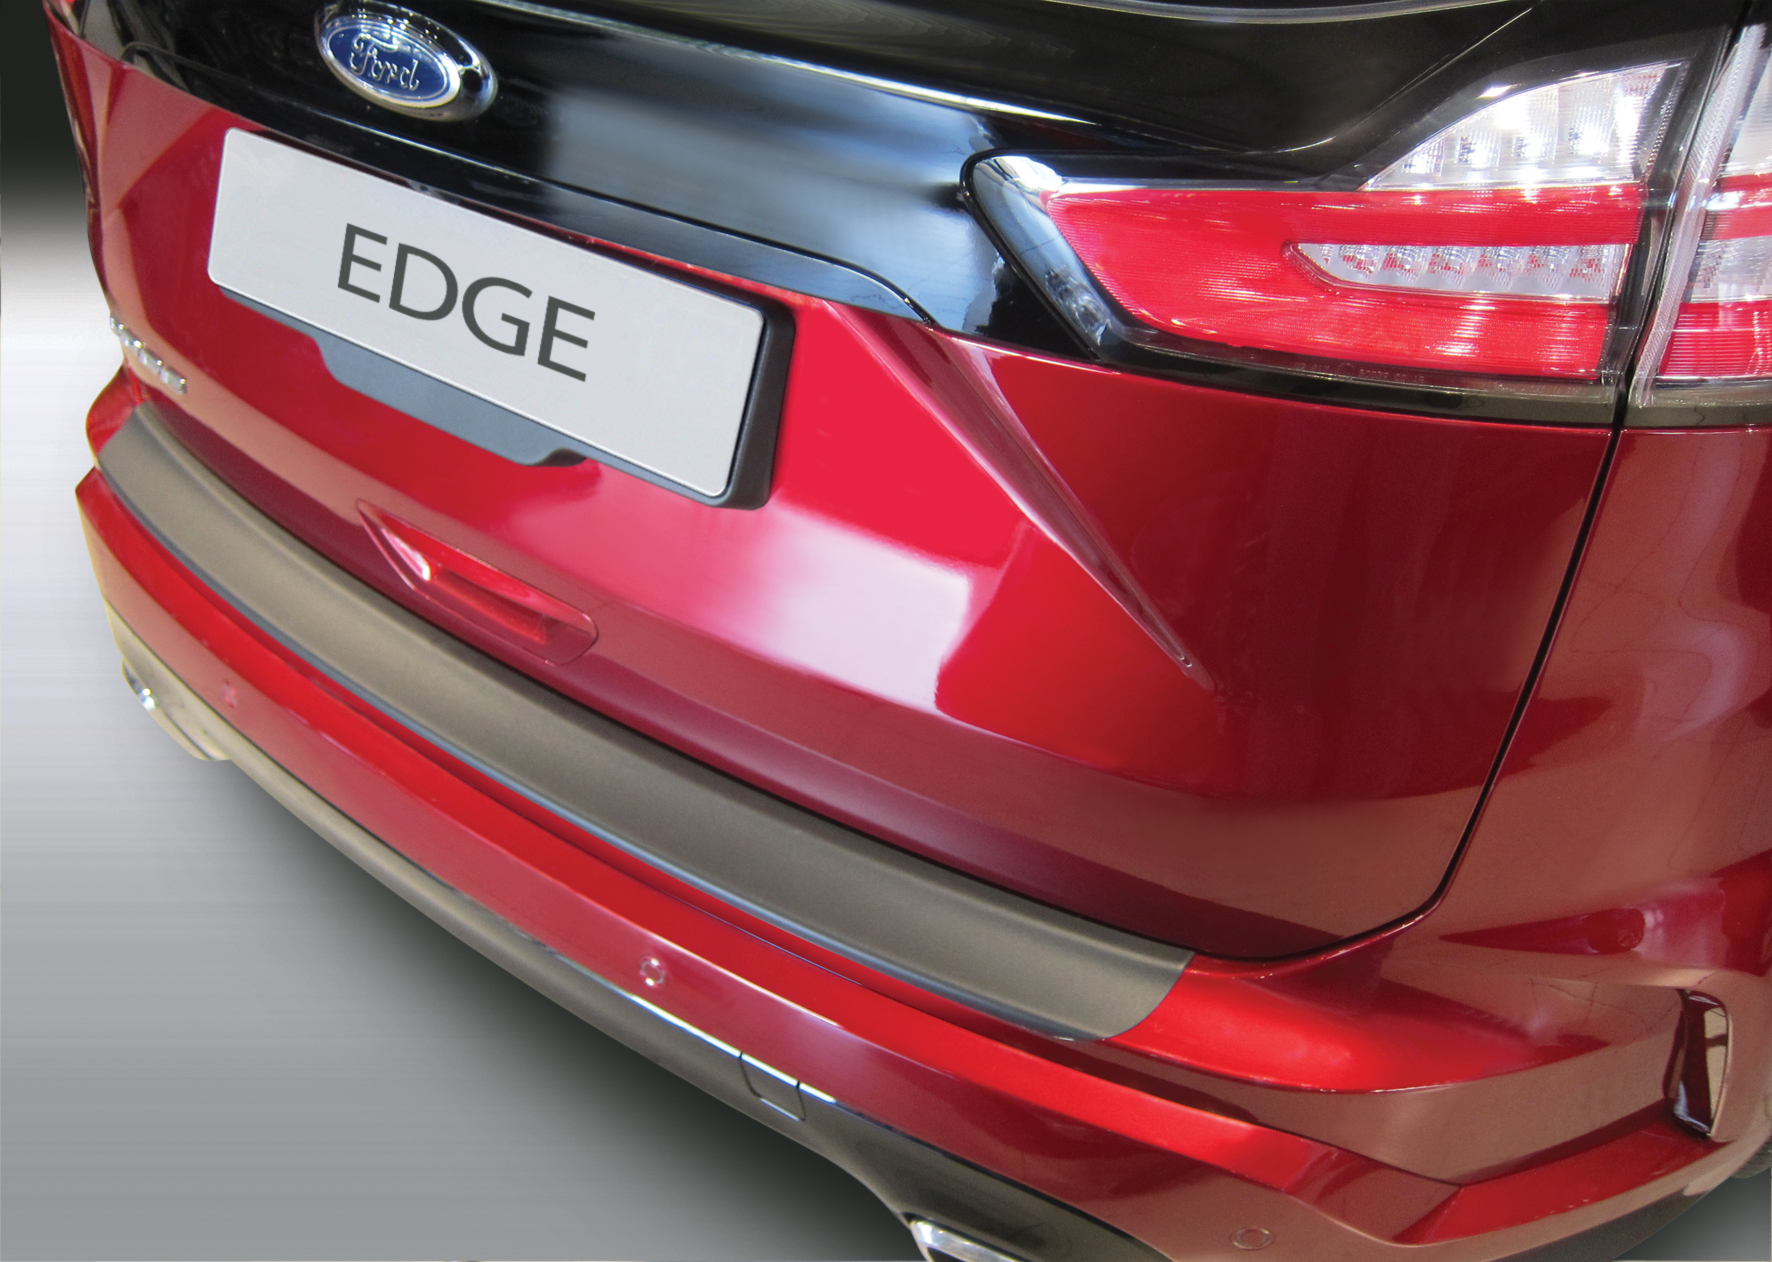 Ladekantenschutz für FORD EDGE - Schutz für die Ladekante Ihres Fahrzeuges | Abdeckblenden